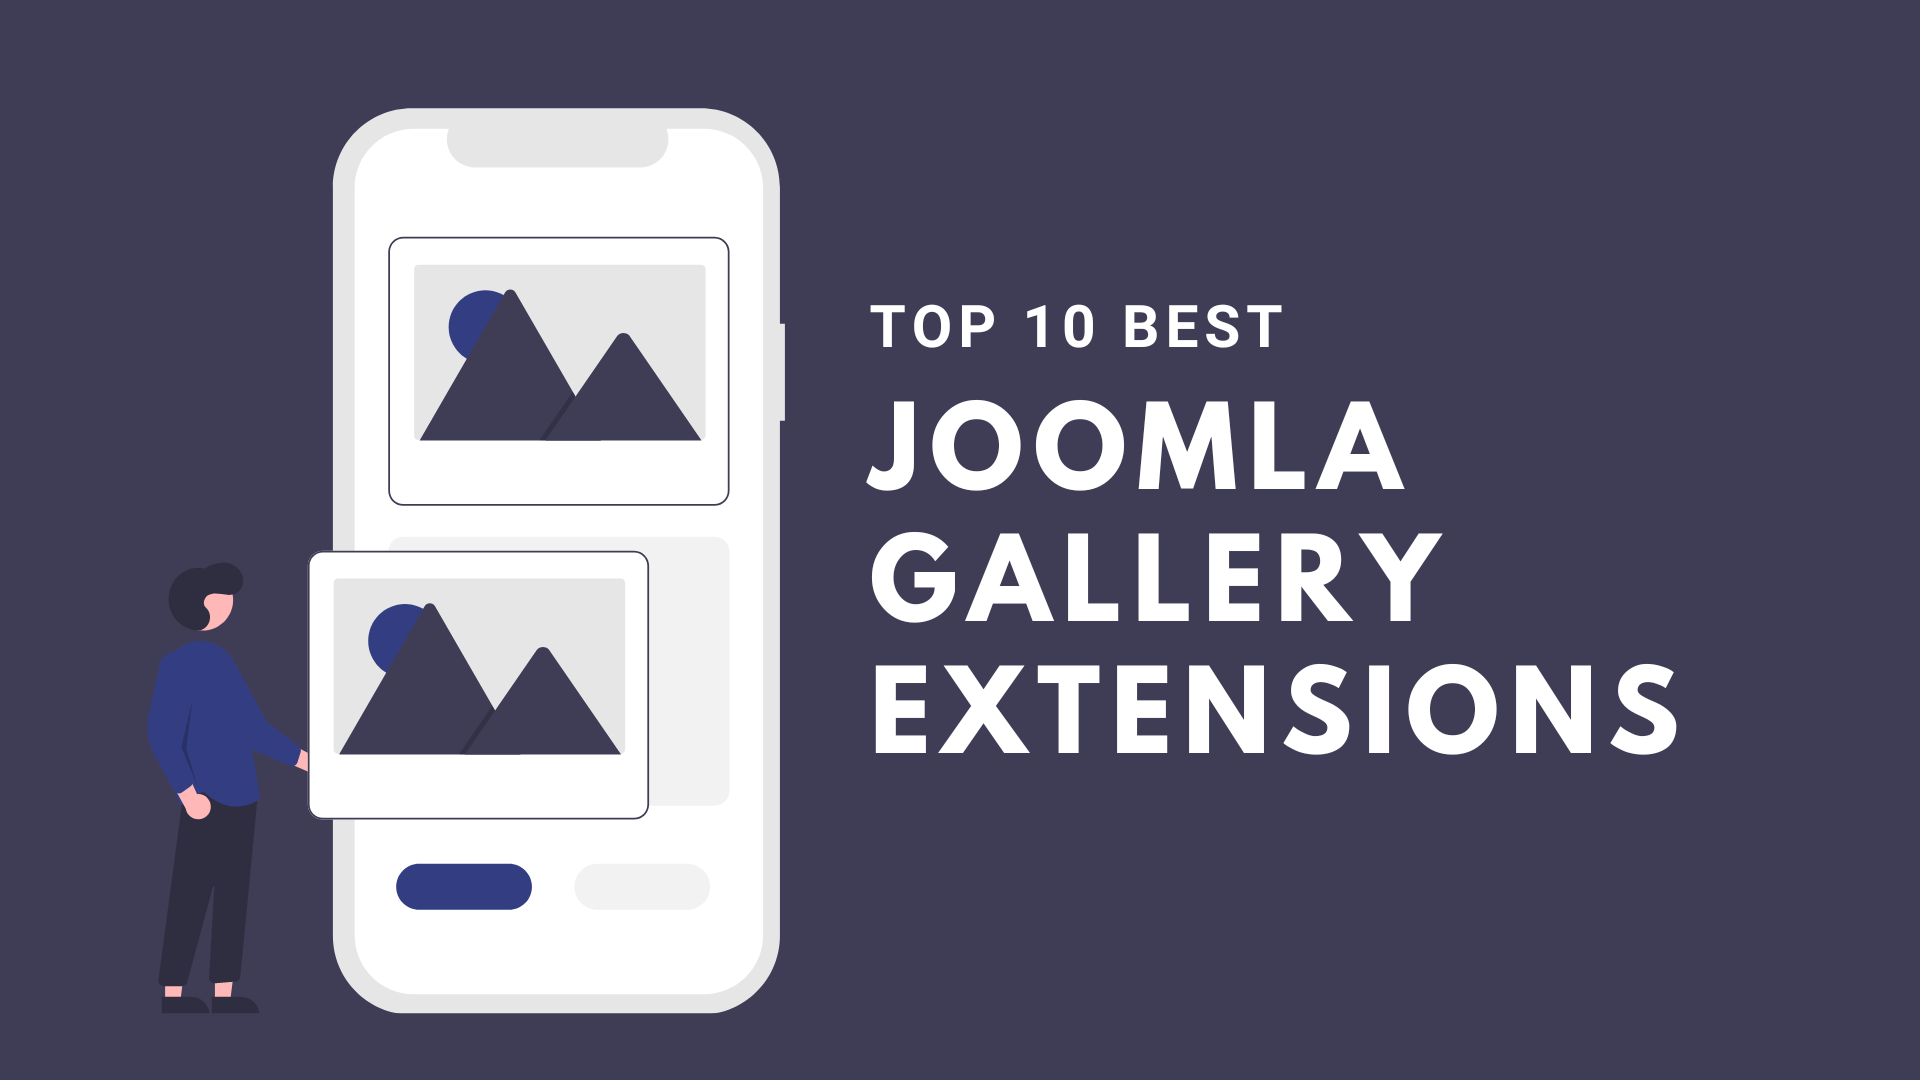 ordasoft Joomla News: Top 10 Best Joomla Gallery Extensions